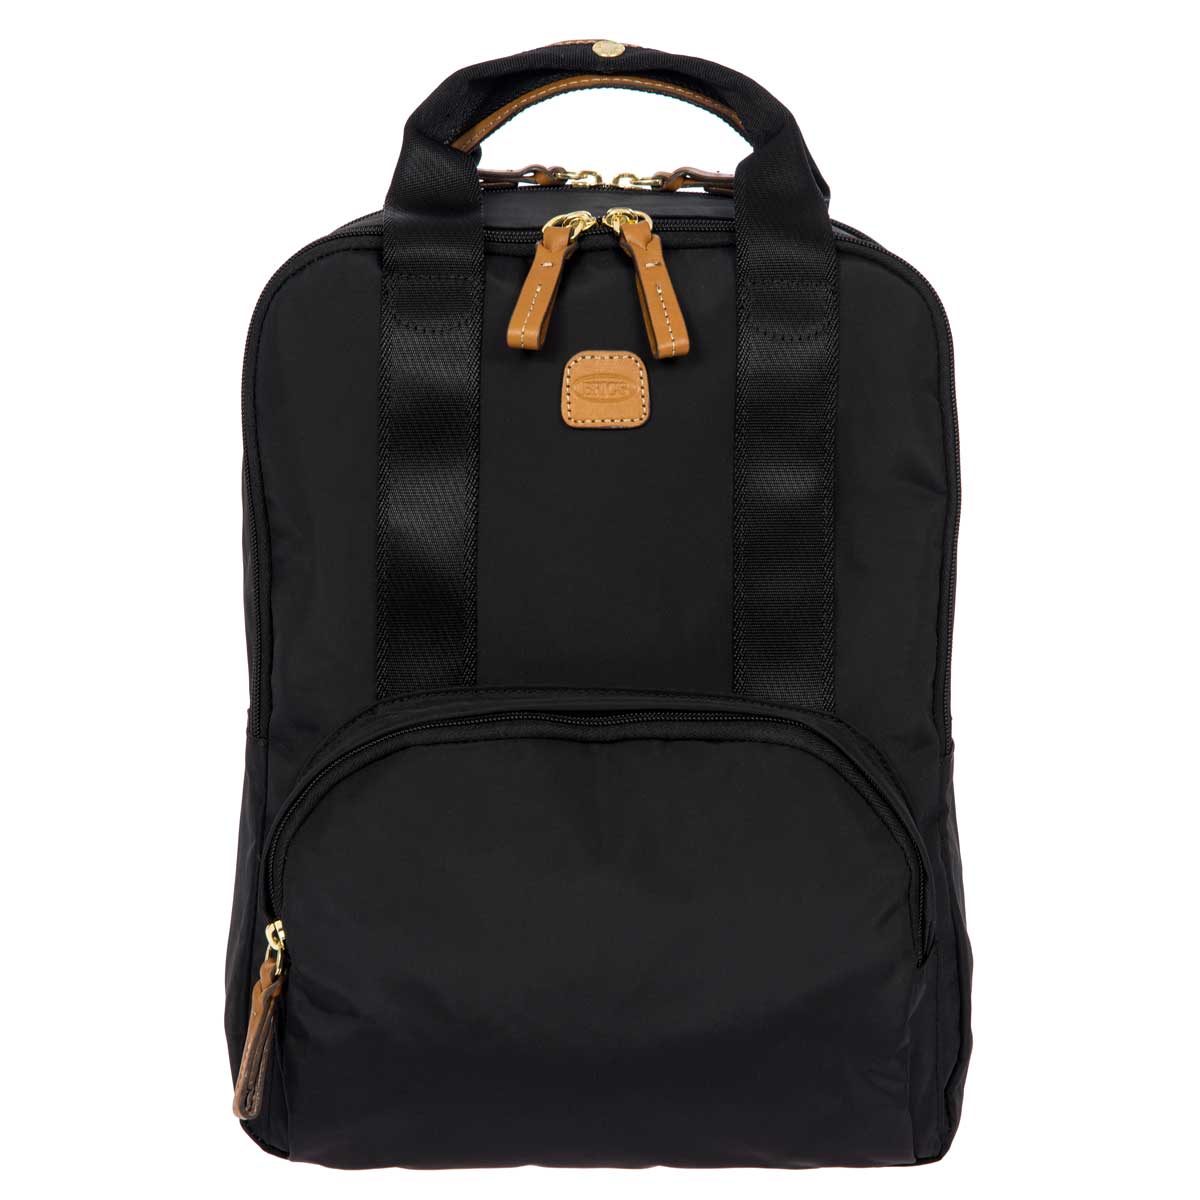 Bric's X-Bag Urban Backpack